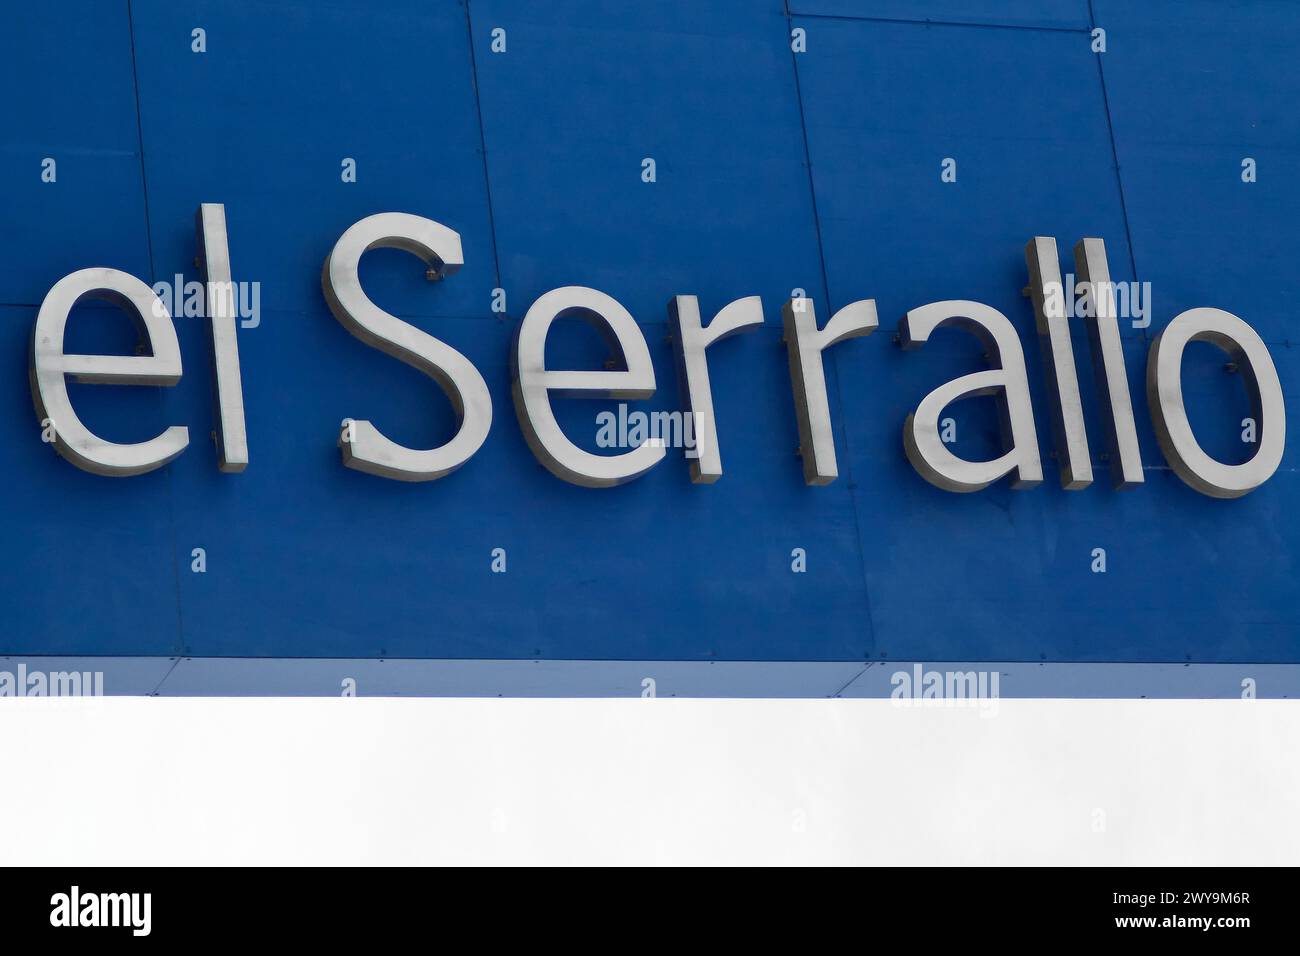 Das Bild zeigt den Text el serrallo in weißen 3D-Buchstaben auf einem leuchtend blauen Hintergrund. El Serrallo ist ein bekannter Küstenbezirk der Stadt T Stockfoto